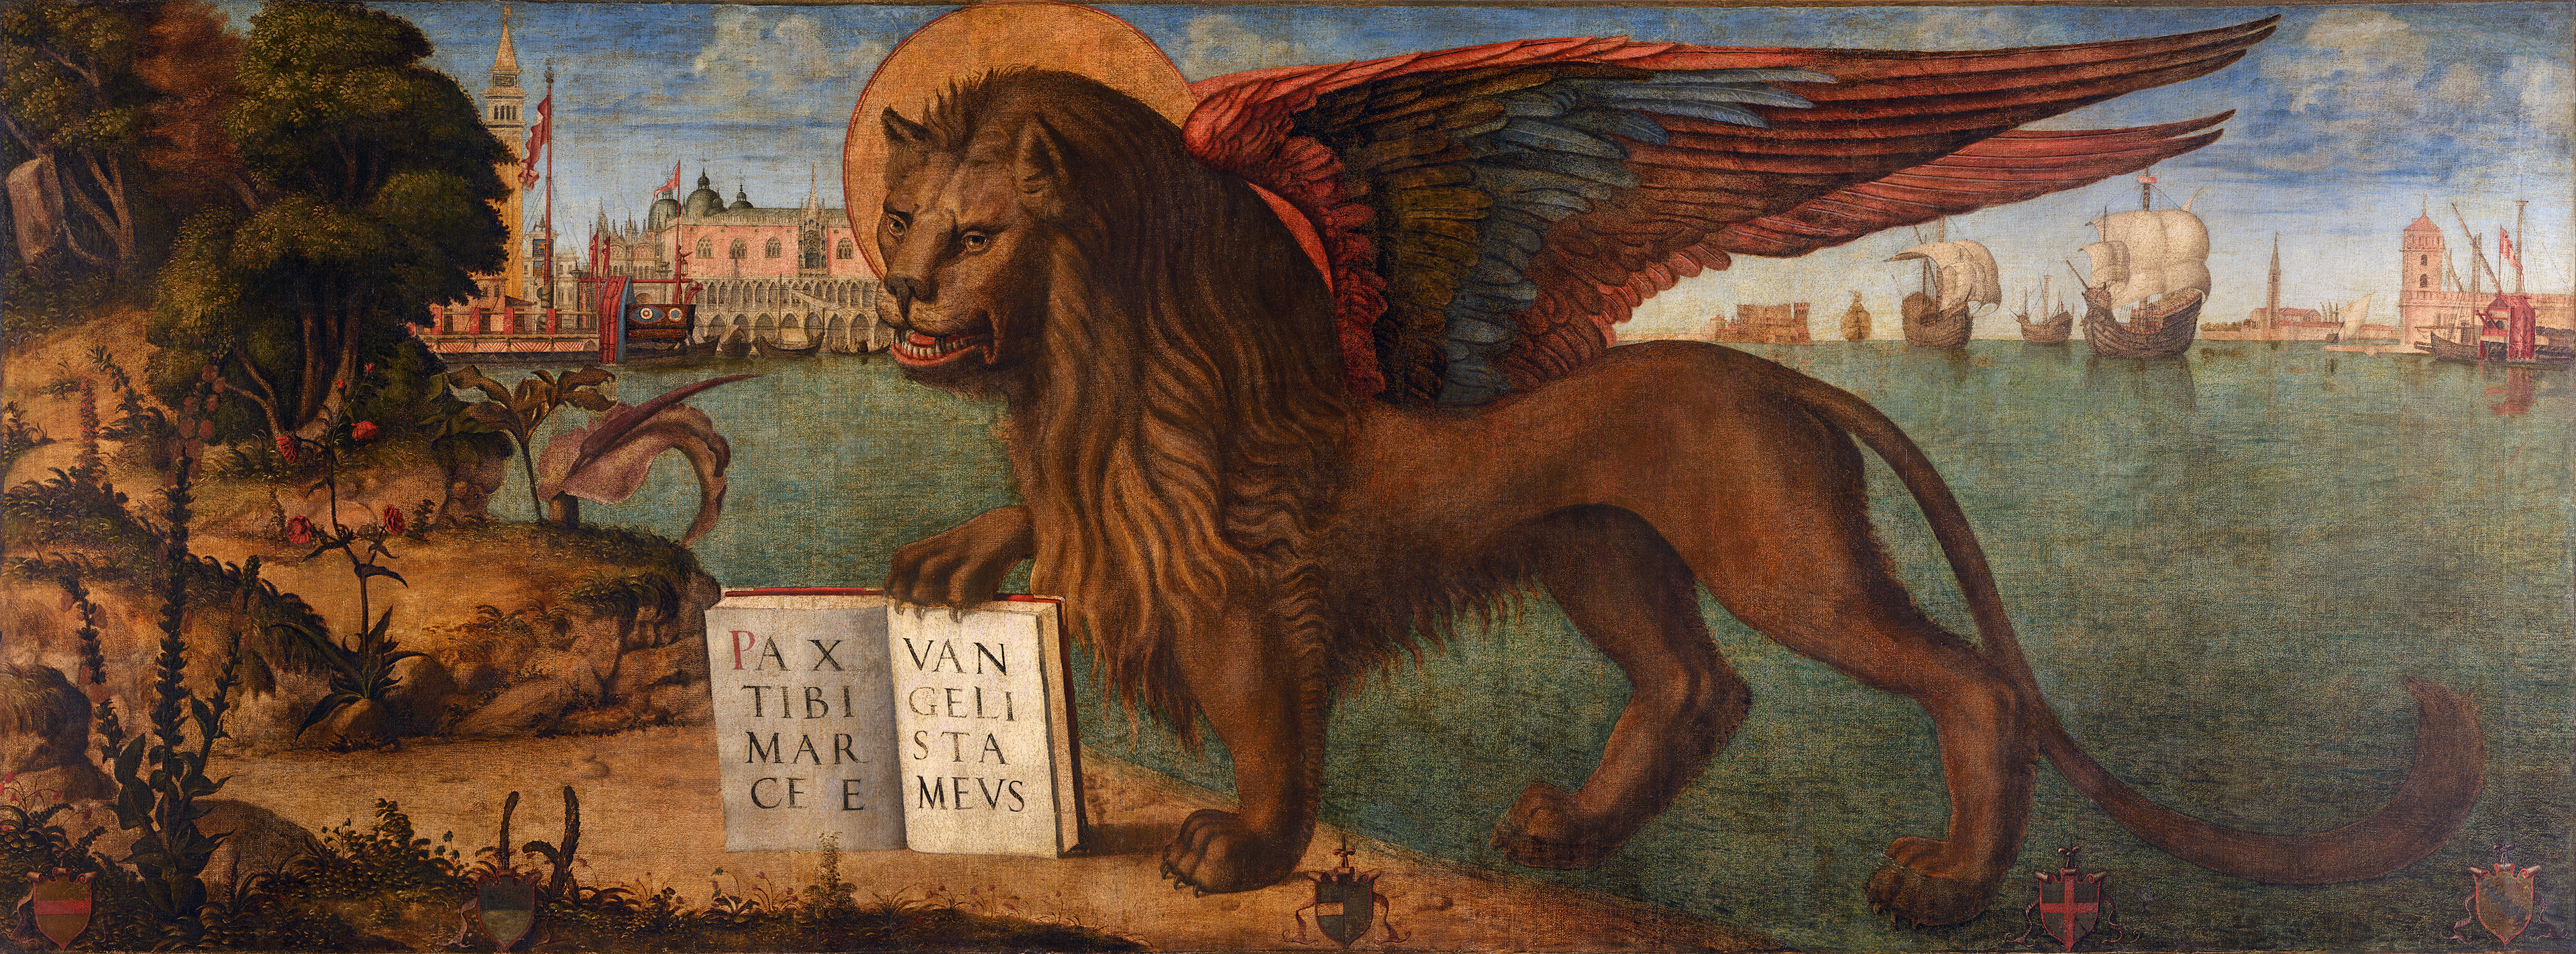 Vittore Carpaccio - The Lion of Saint Mark (1516) by Vittore Carpaccio